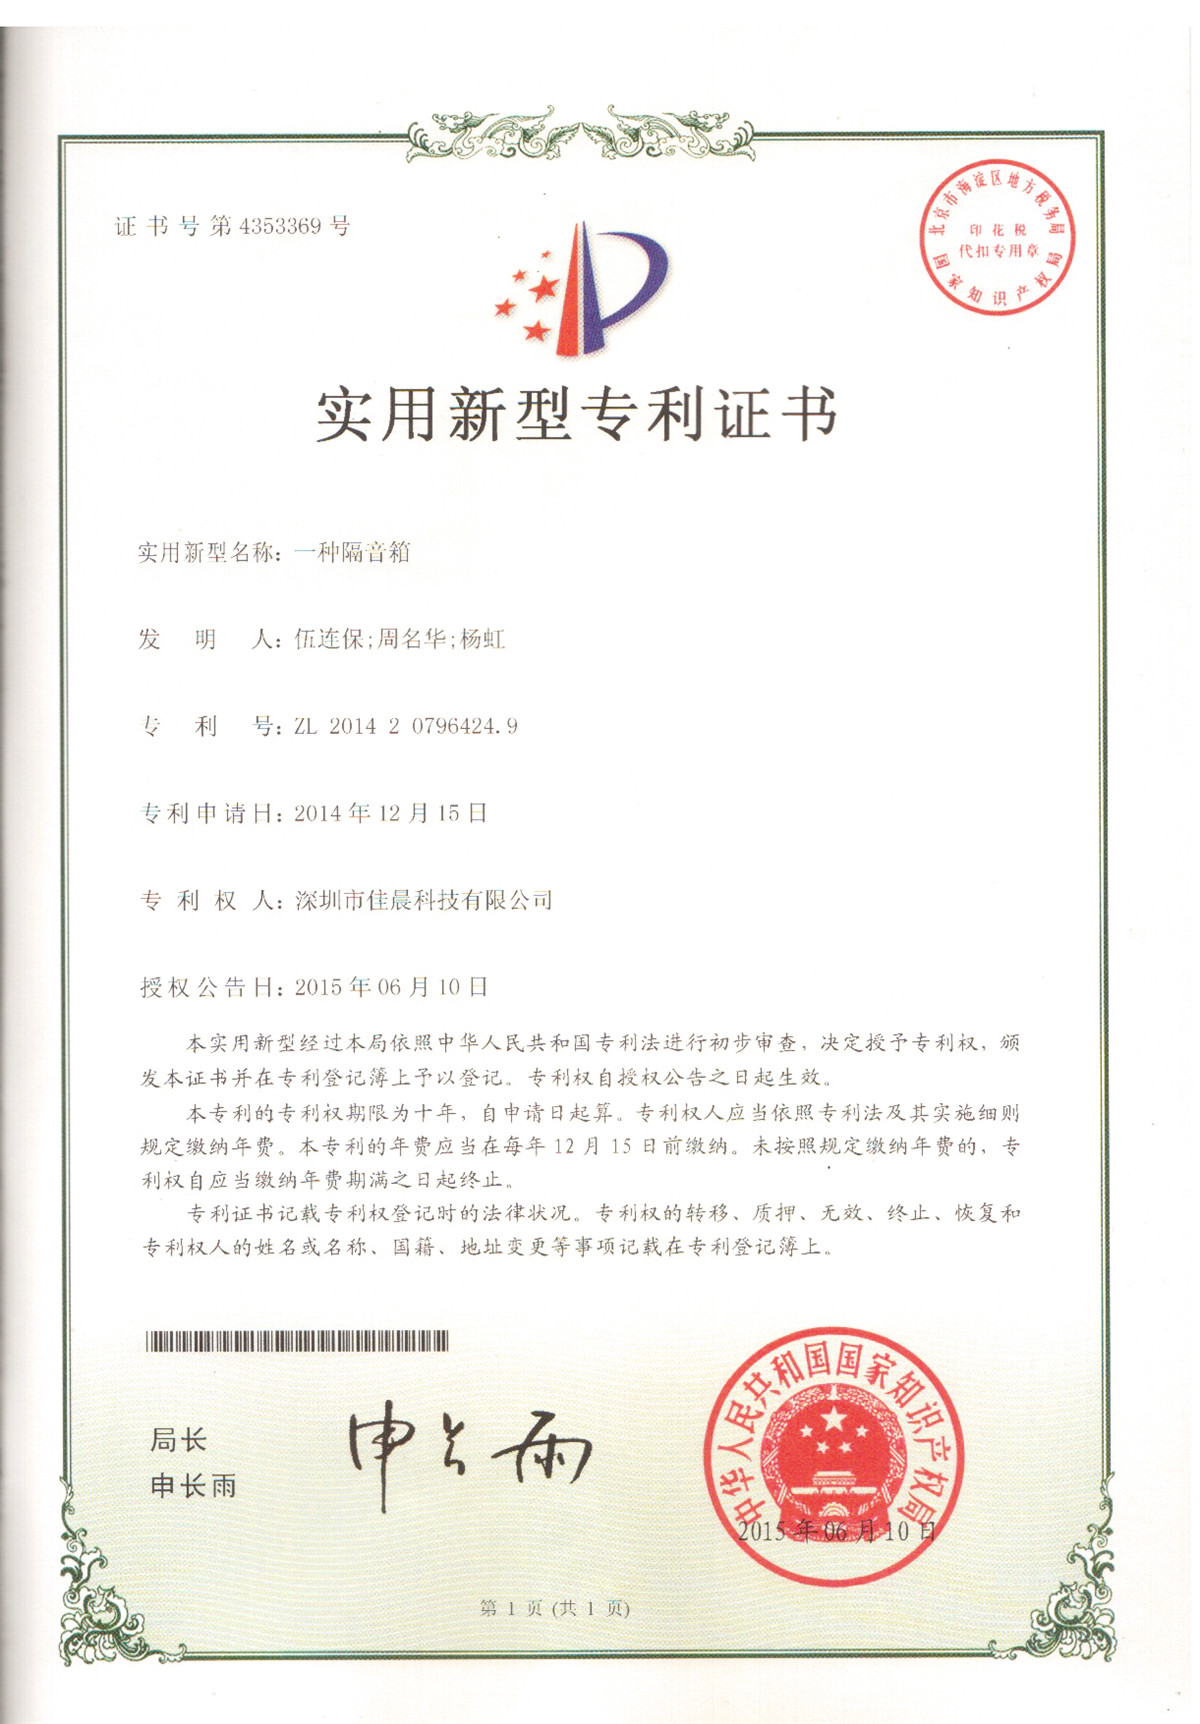 Utility patent certificate of loudspeaker